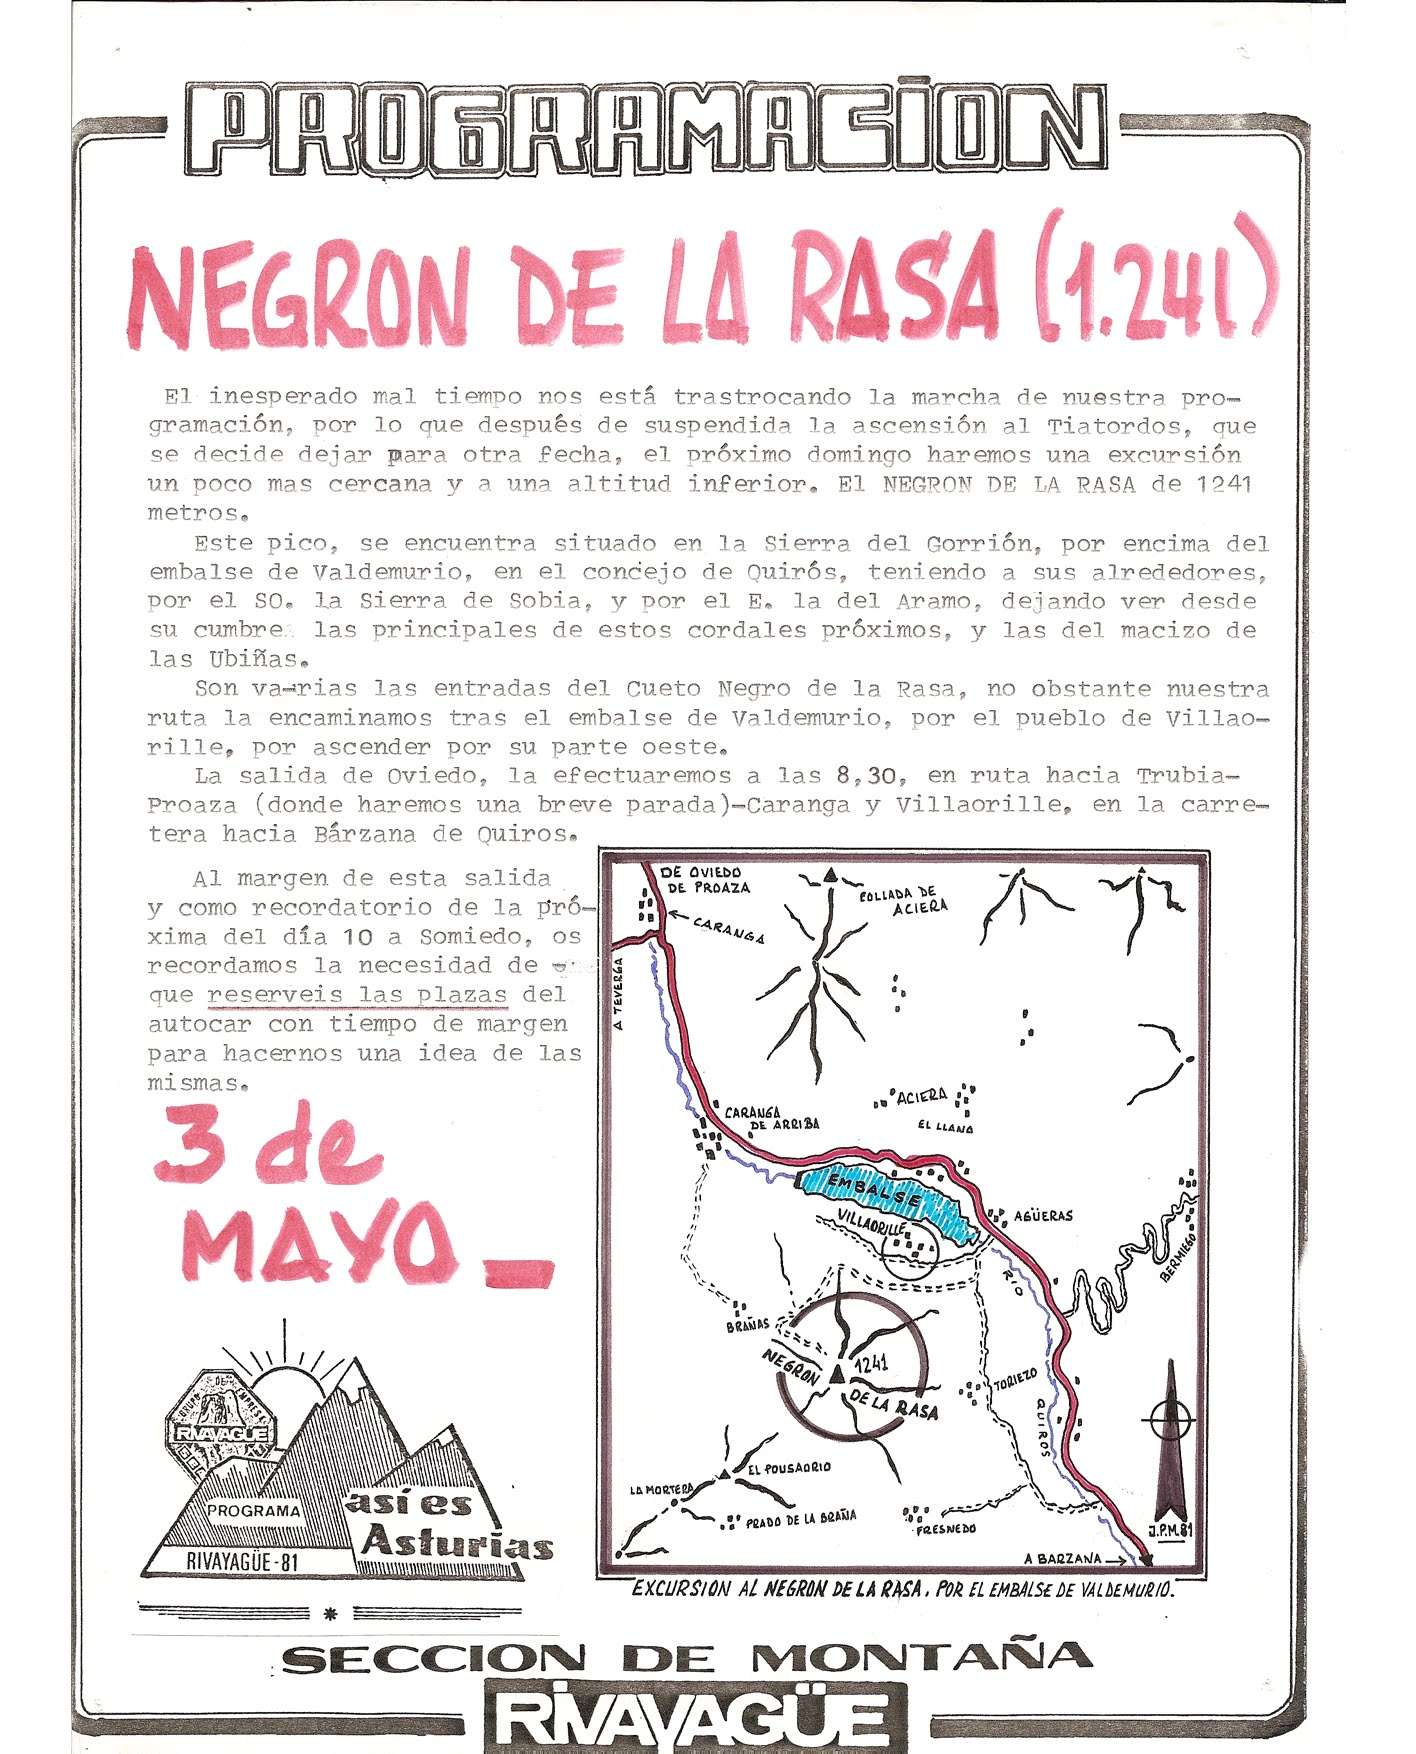 03 mayo, 1981: Negrón de la Rasa